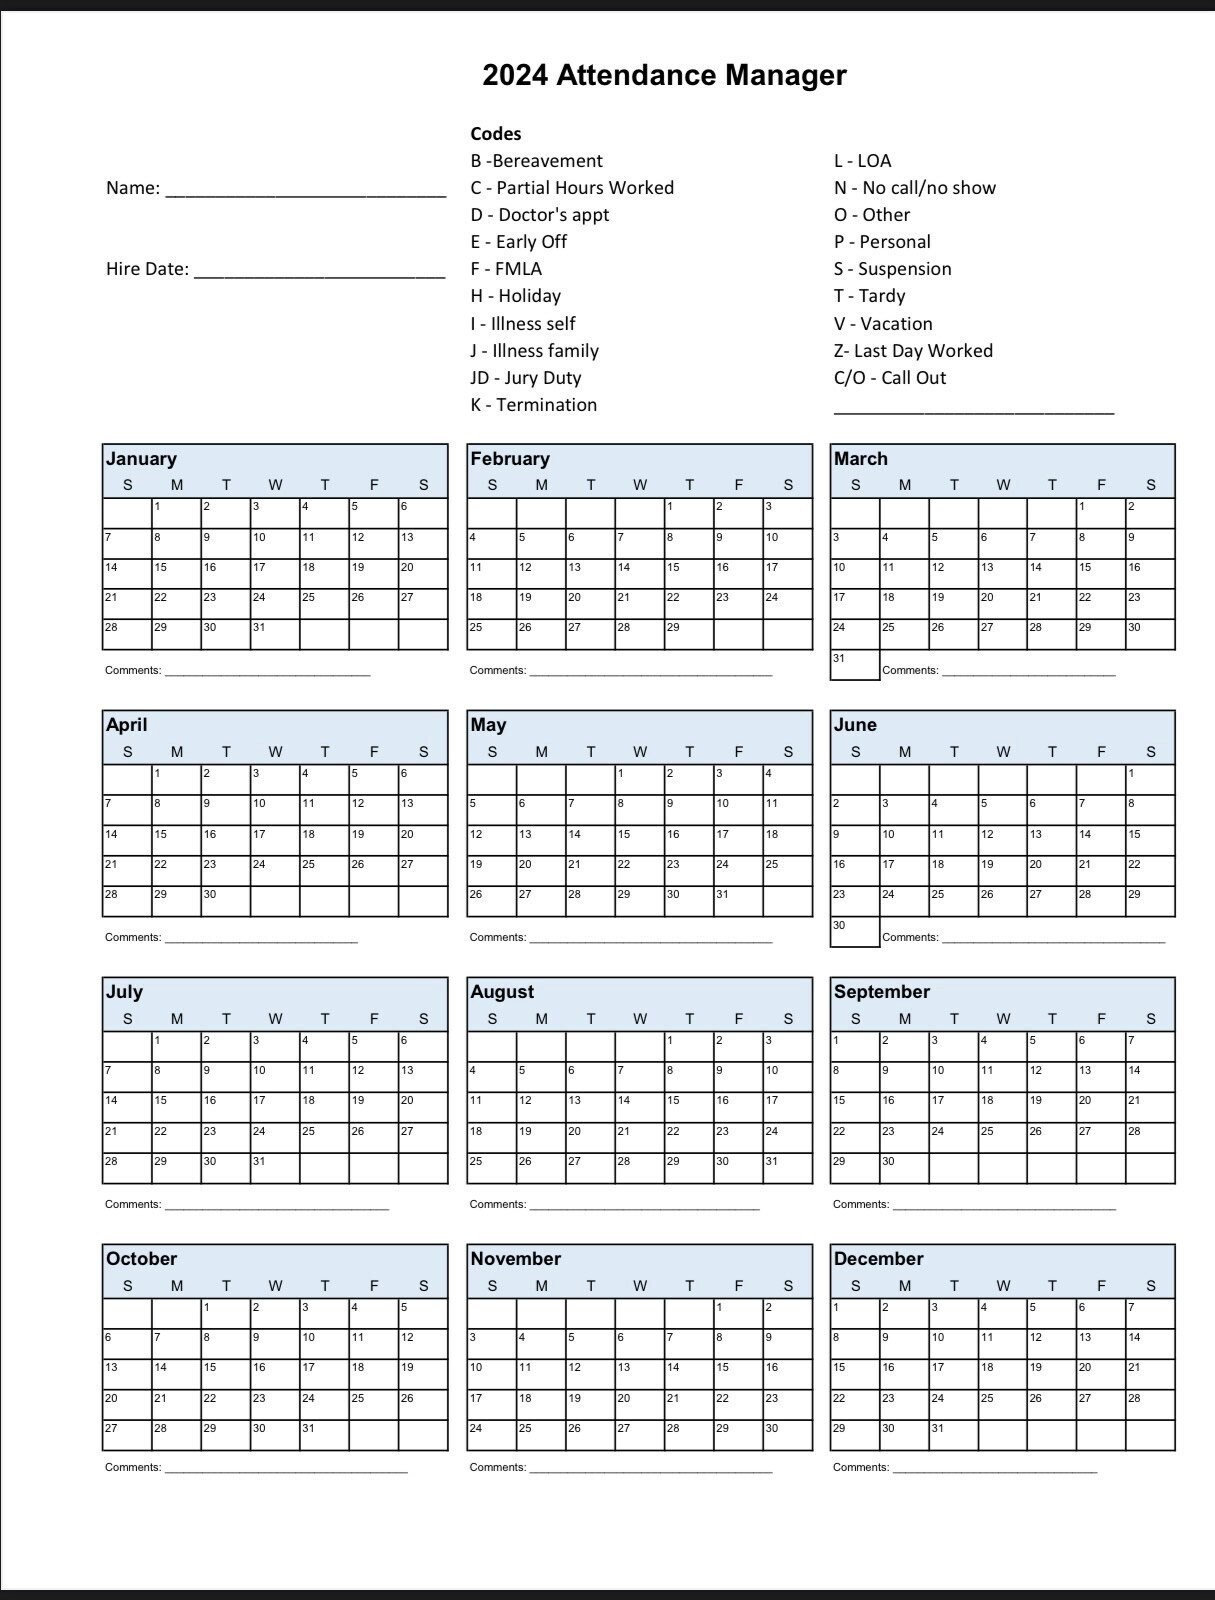 2024 Employee School Attendance Tracker Calendar, Employee pertaining to Attendance Calendar Template 2024